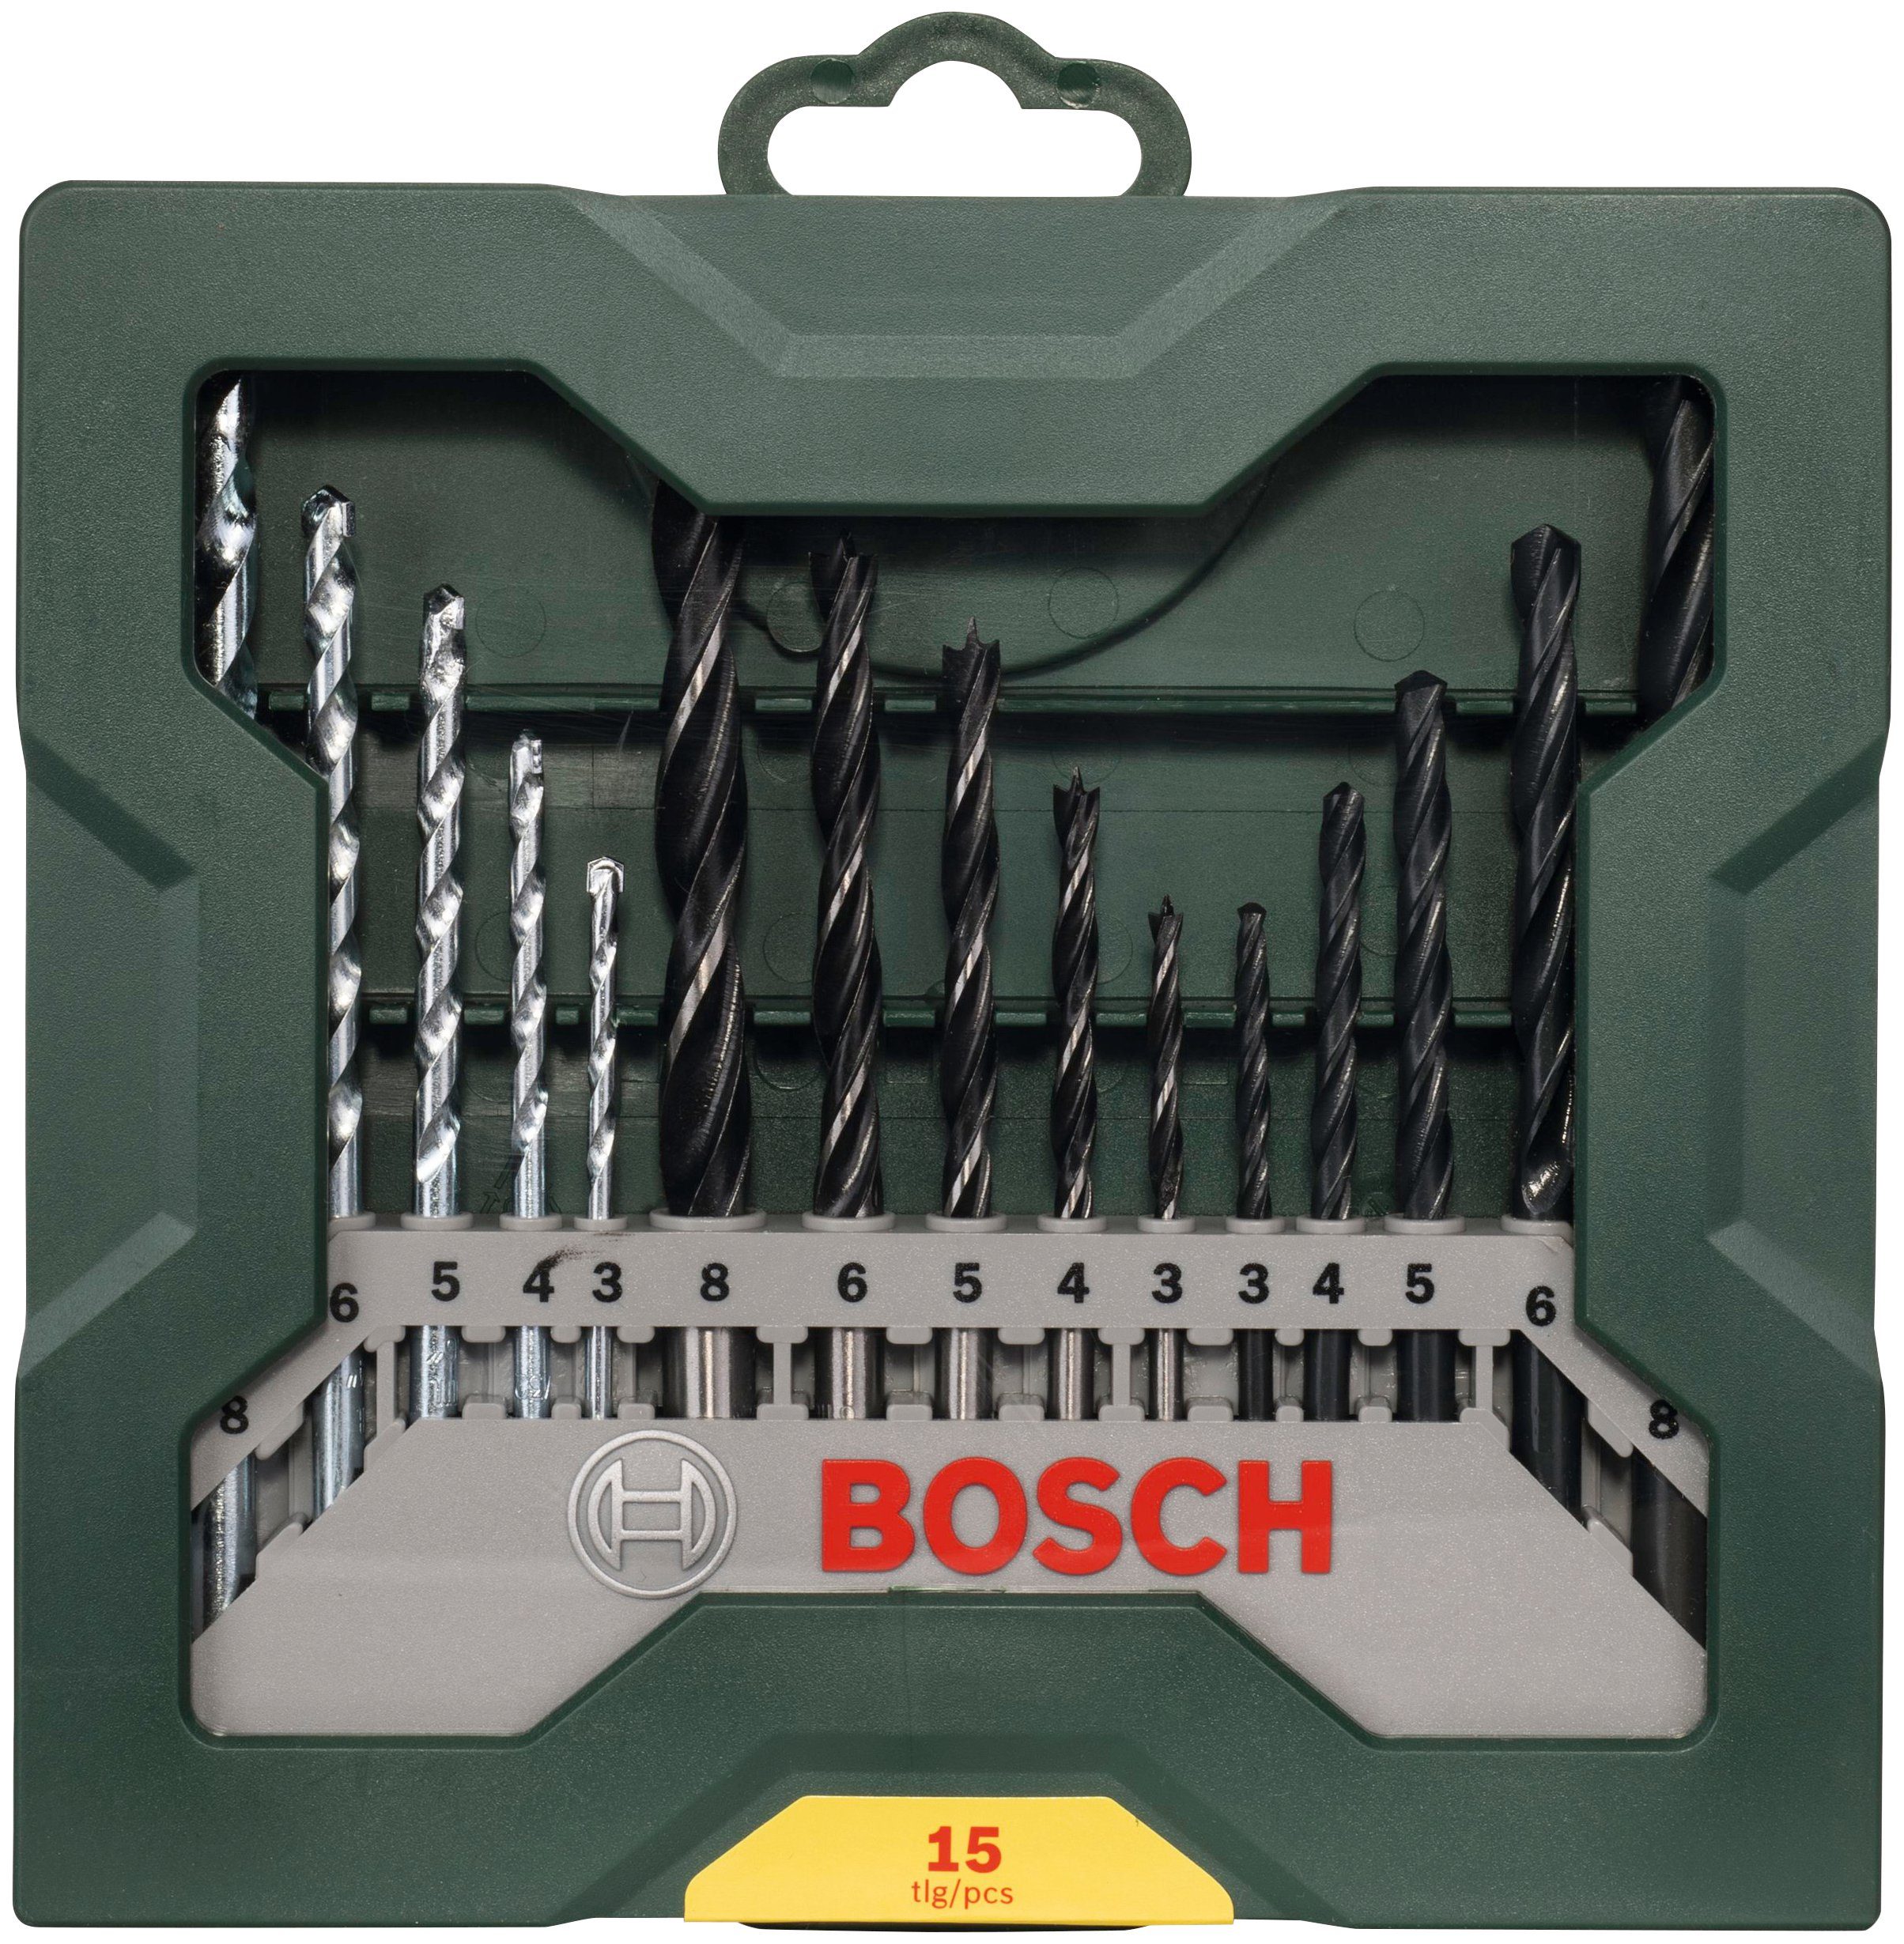 Bosch Home & Garden Spiralbohrer 15-teiliges Mini-X-Line Mixed-Set, (15-tlg), 5 Steinbohrer, 5 Metallbohrer, 5 Holzbohrer